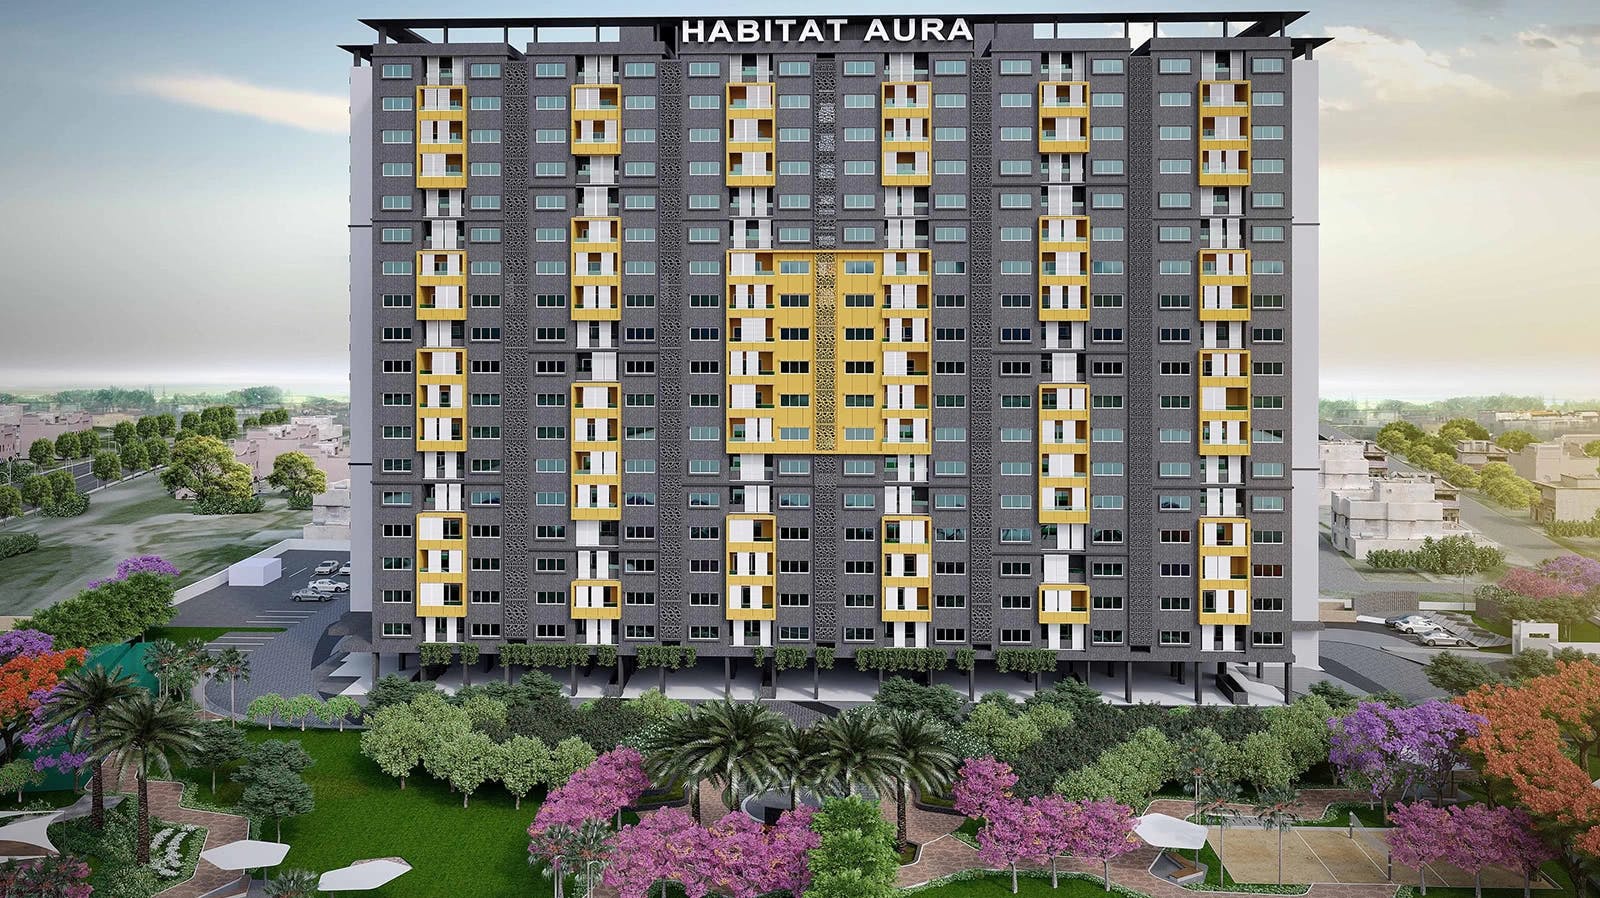 Image of Habitat Aura